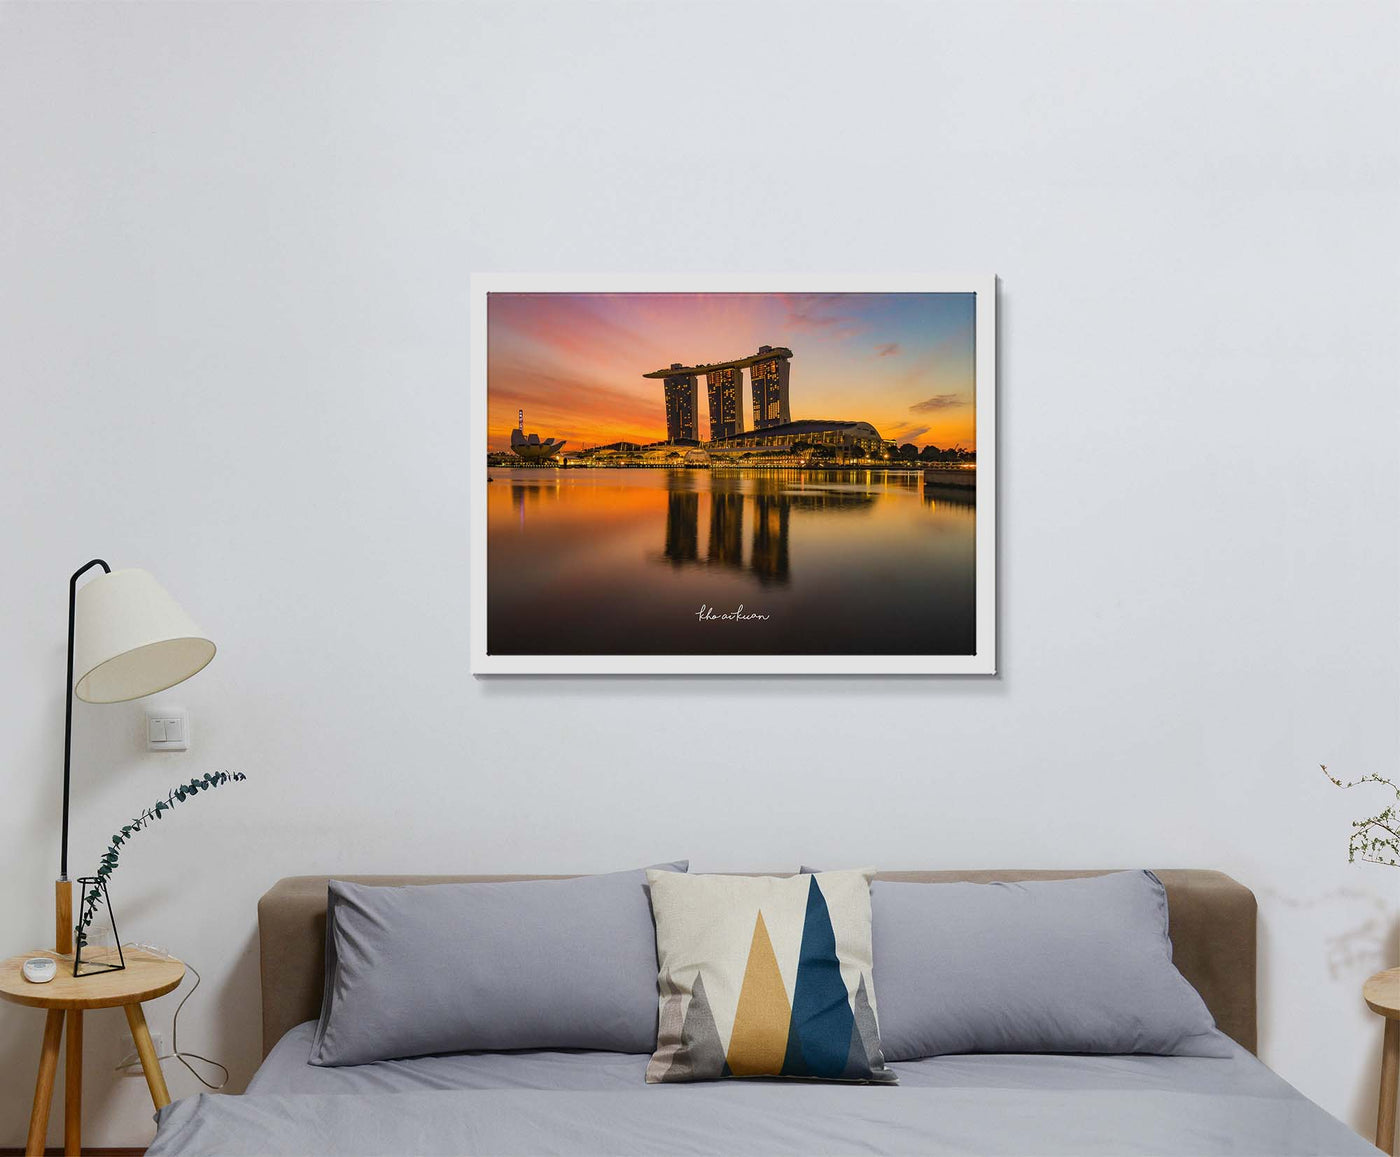 Marina Bay Sands (Framed Prints)